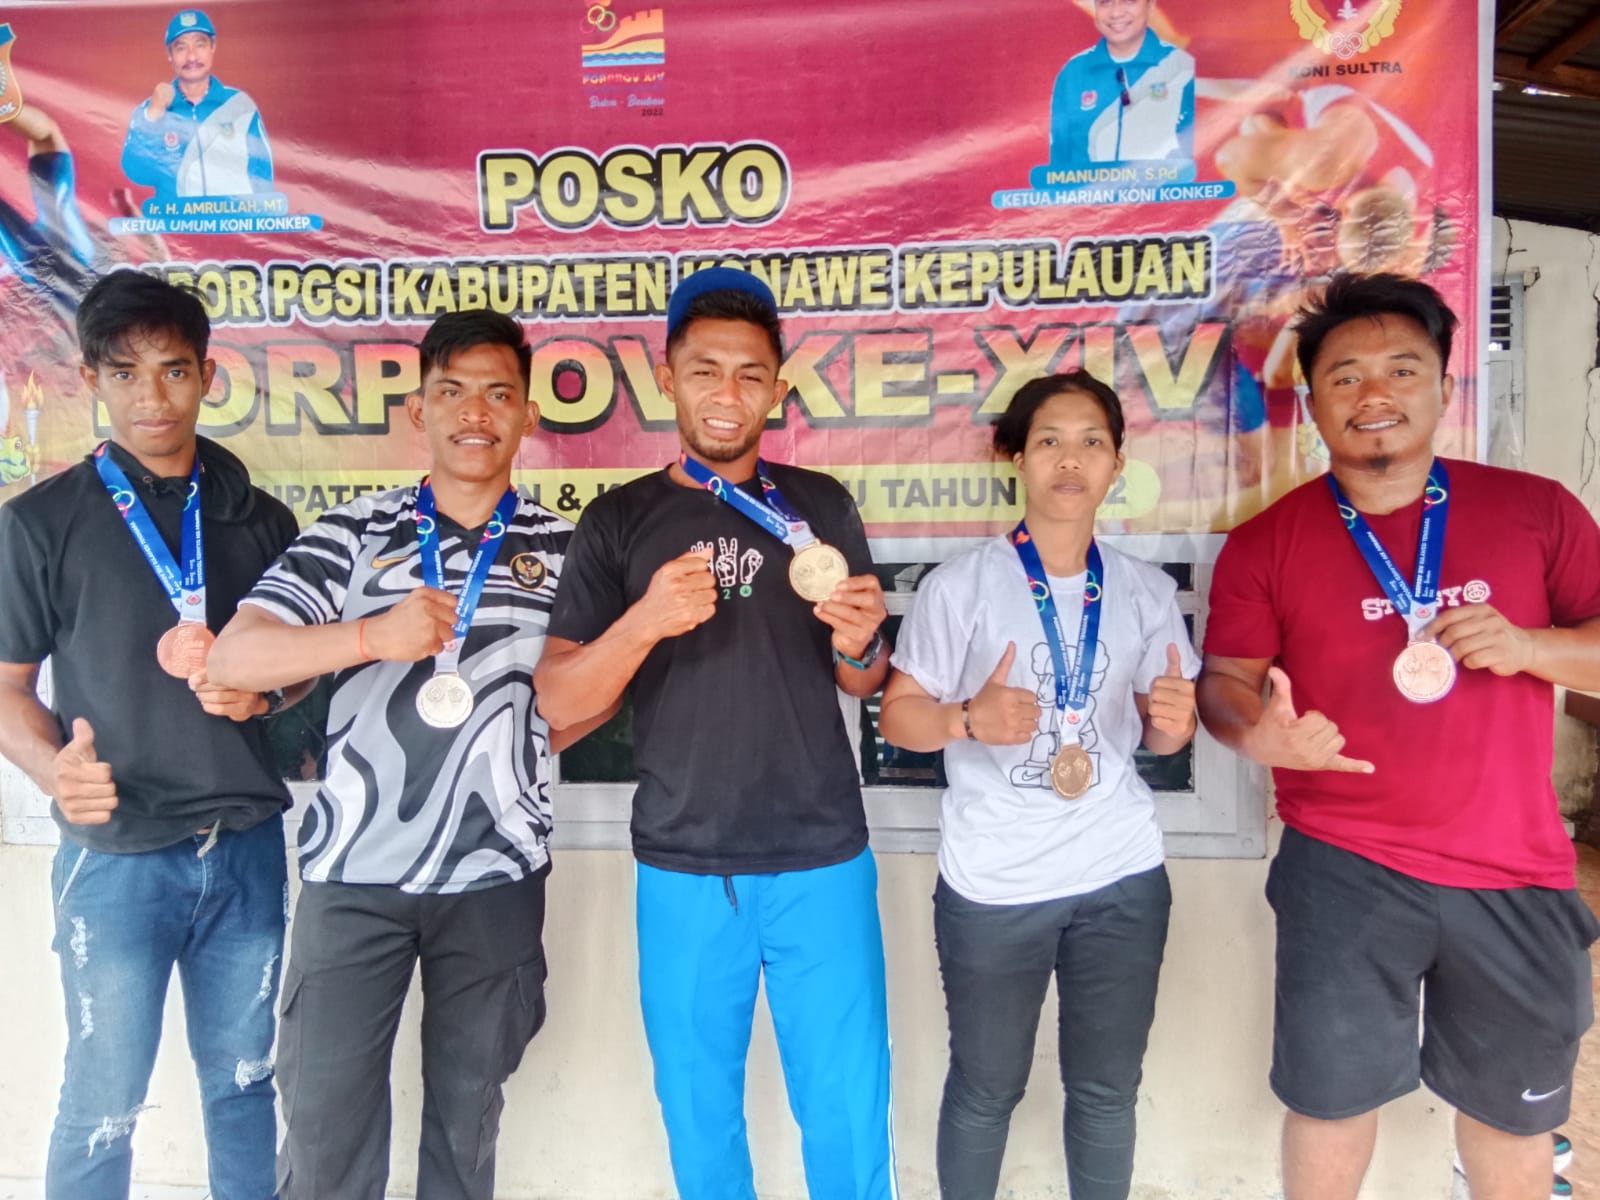 Cerita Dua Karyawan Tambang di Konkep Sukses Raih Medali di Porprov Sultra